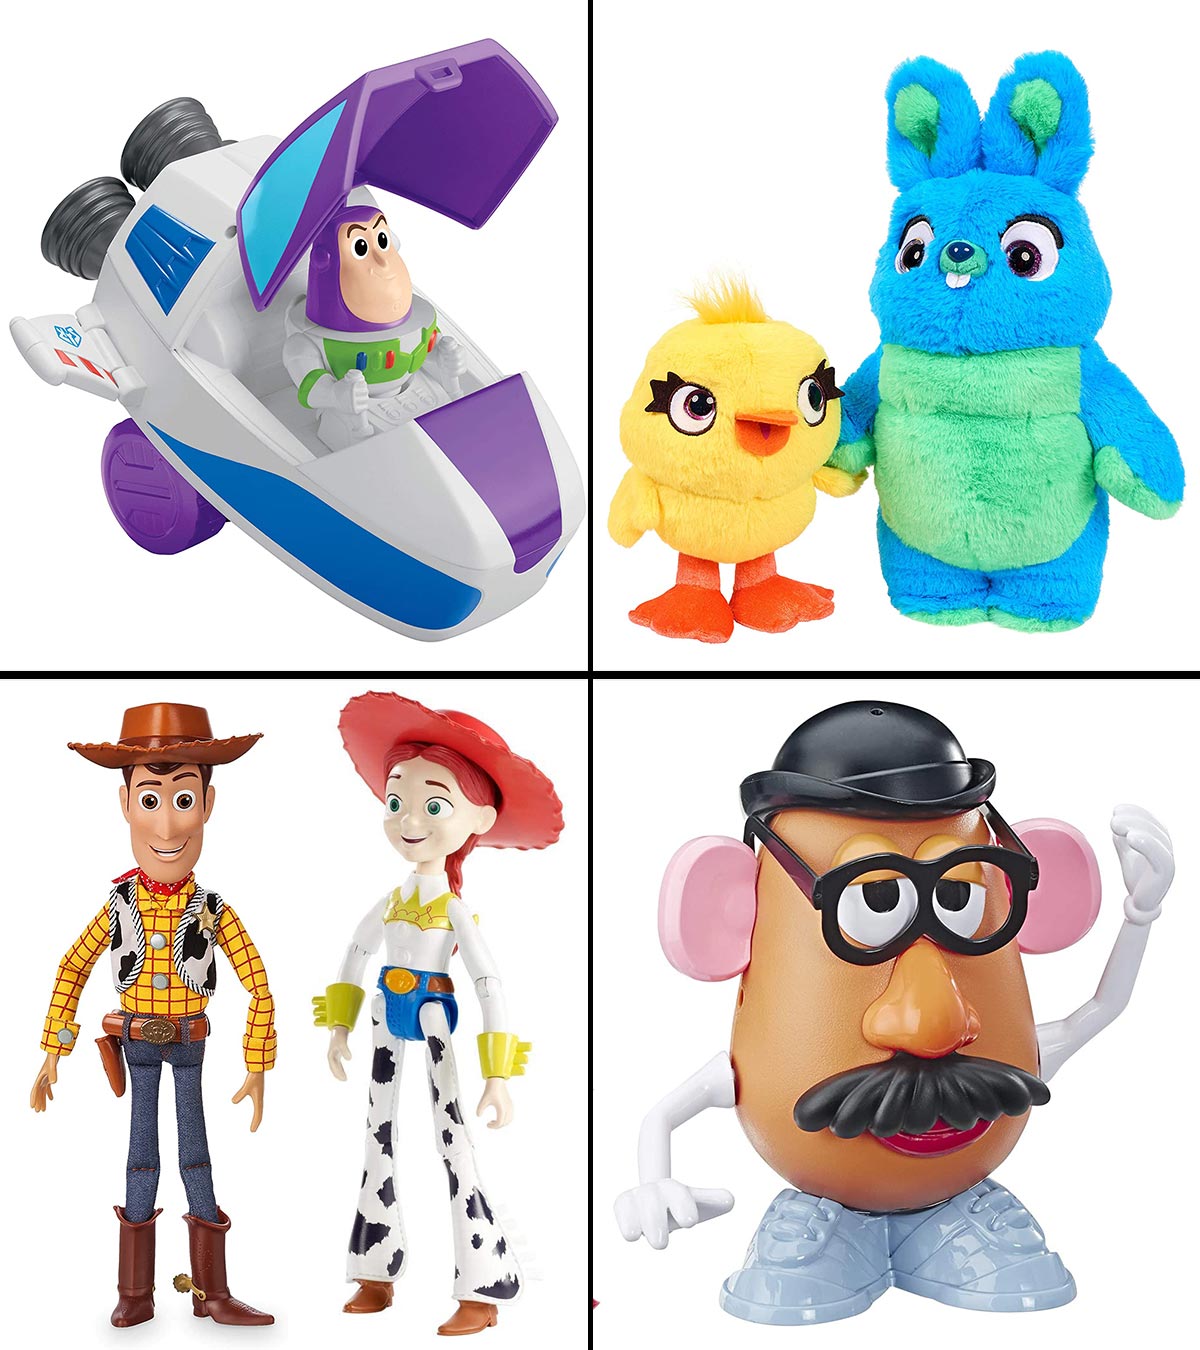  Hot Wheels 2020 Bundle of 5 Disney Pixar Toy Story